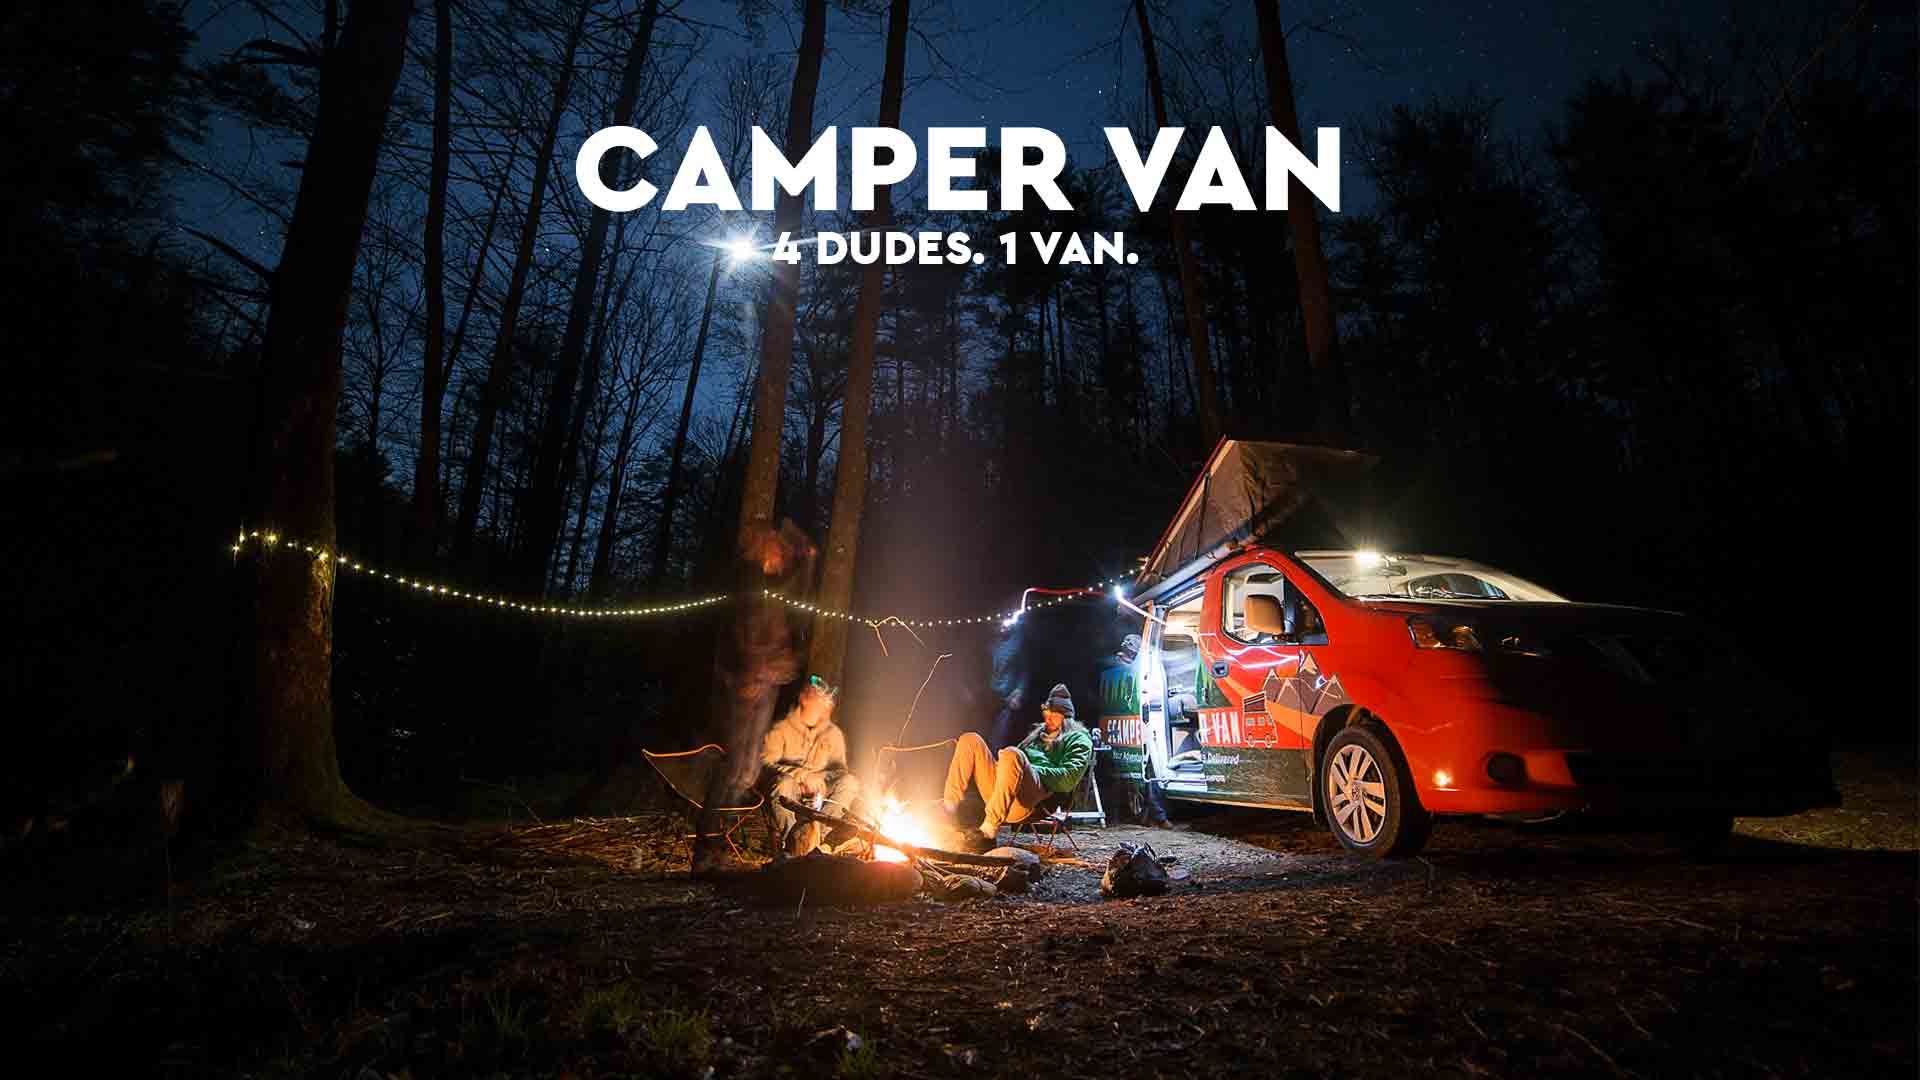 Van Life | 4 Dudes. 1 Van.